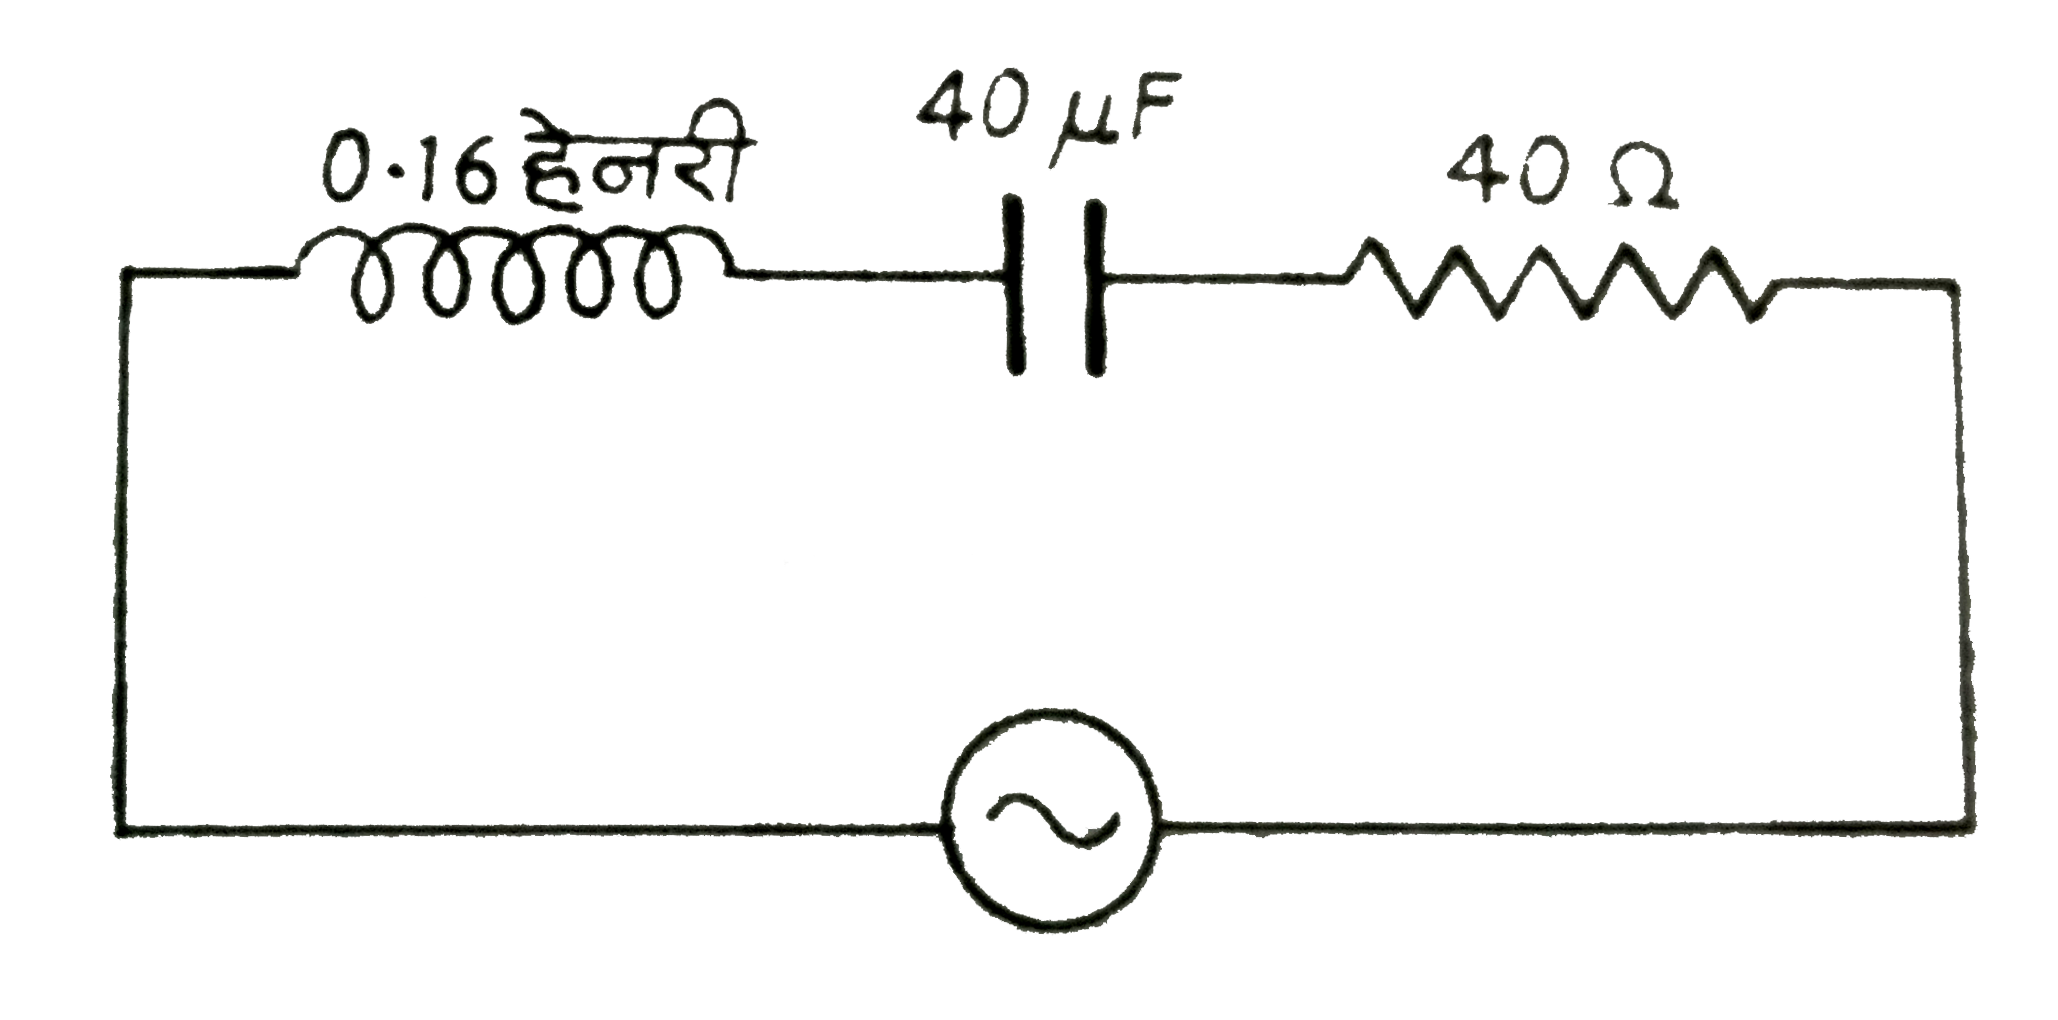 संग्लन चित्र में एक L-C-R परिपथ दिखाया गया है|प्रत्यावर्ती धारा-स्त्रोत की वोल्टता V=100sin 500t  से प्रदर्शित है|परिपथ के लिए गणना कीजिए:(i ) प्रतिबाधा,(ii )  शक्ति-गुणांक तथा (iii ) धारा का शिखर मान|